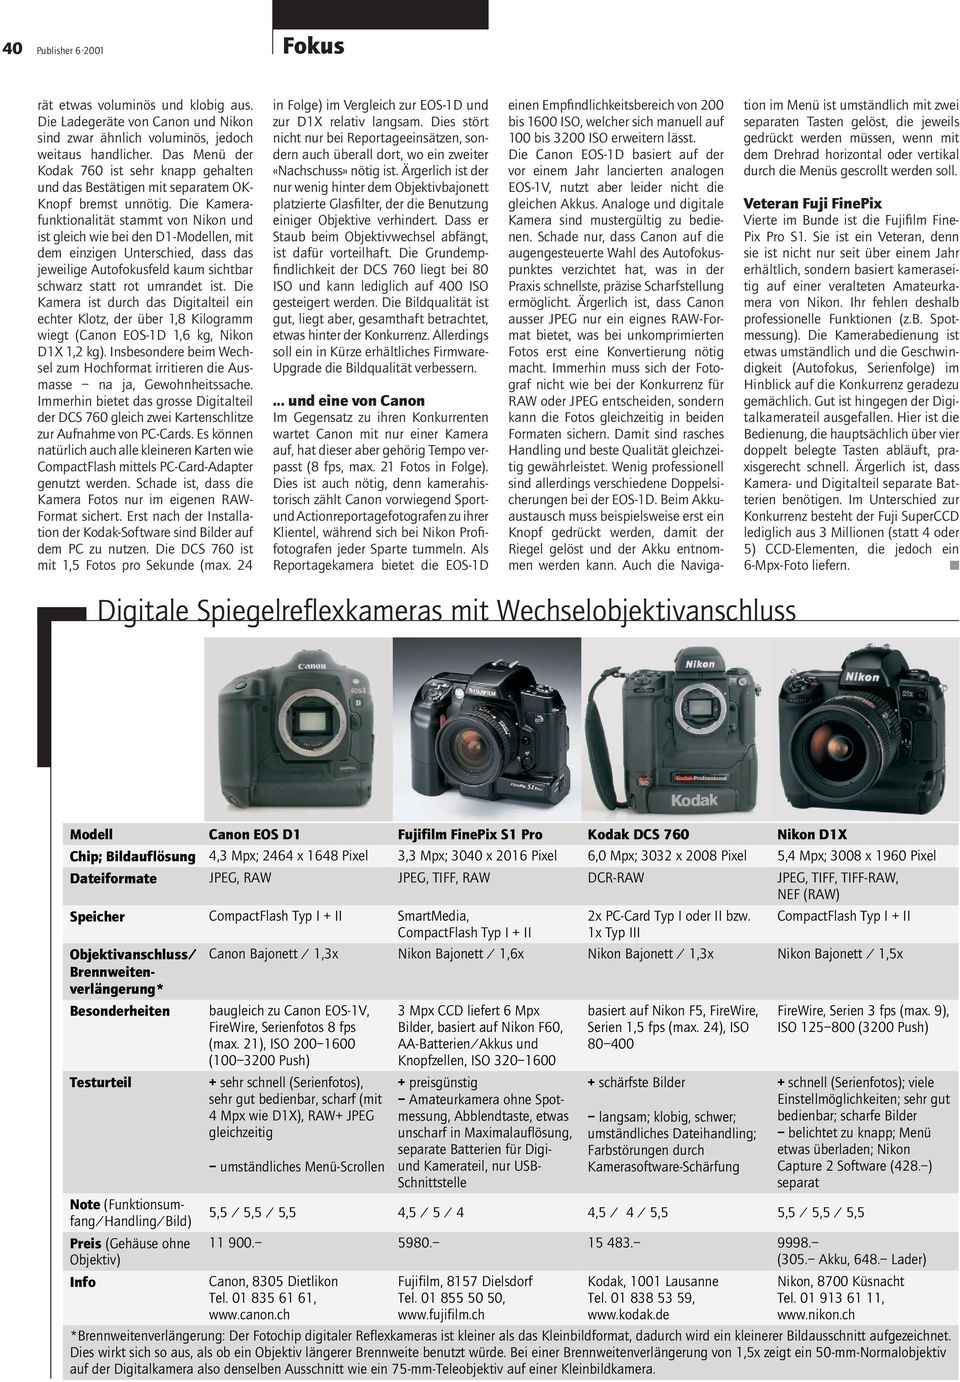 Die Kamerafunktionalität stammt von Nikon und ist gleich wie bei den D1-Modellen, mit dem einzigen Unterschied, dass das jeweilige Autofokusfeld kaum sichtbar schwarz statt rot umrandet ist.